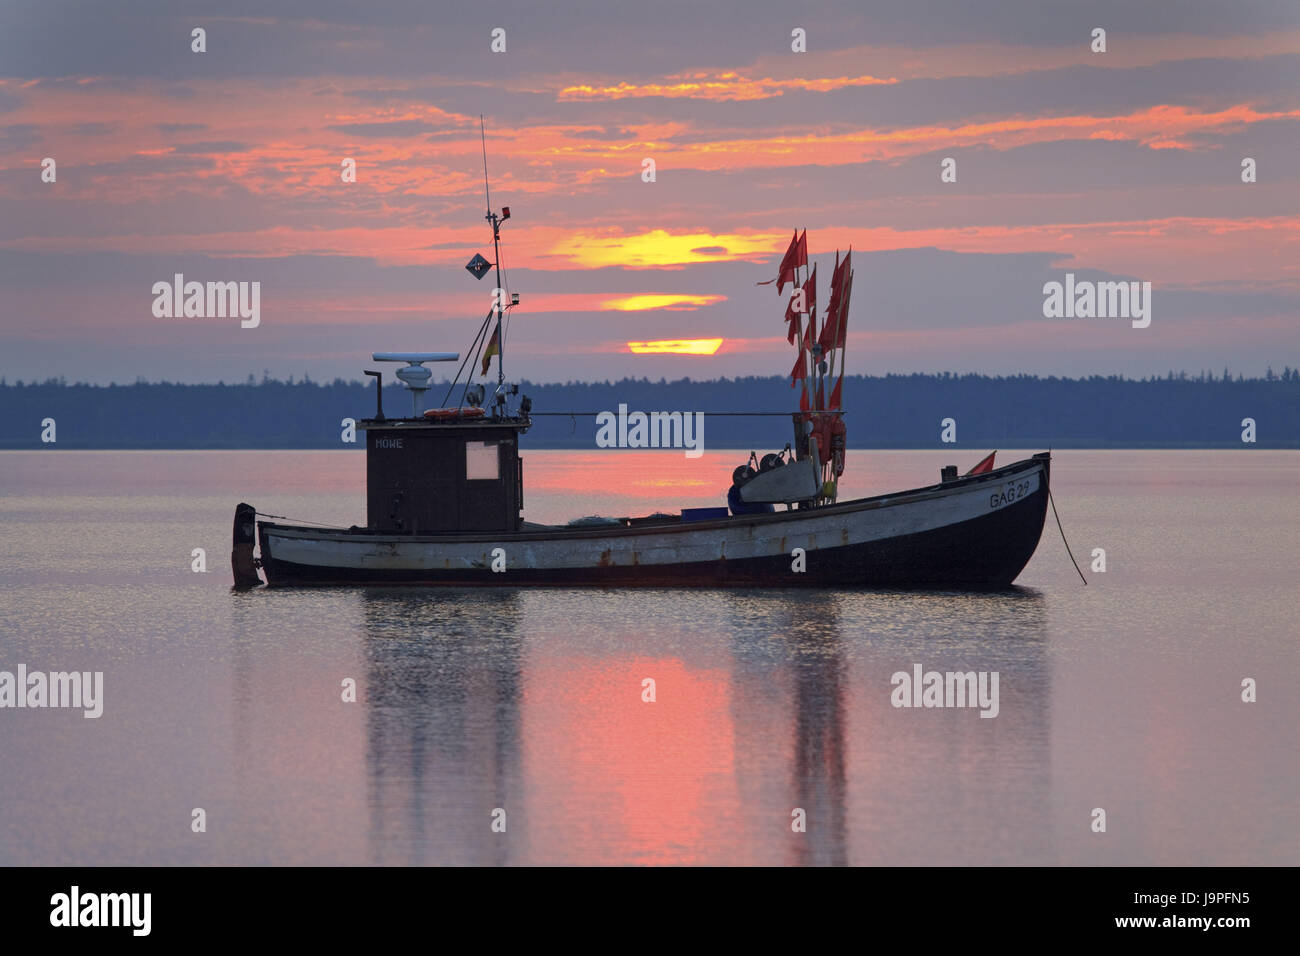 Allemagne,1,l'île de Rügen en mer Baltique,Nouveau,Reddevitz,bateau de pêche,matin, tuning Banque D'Images